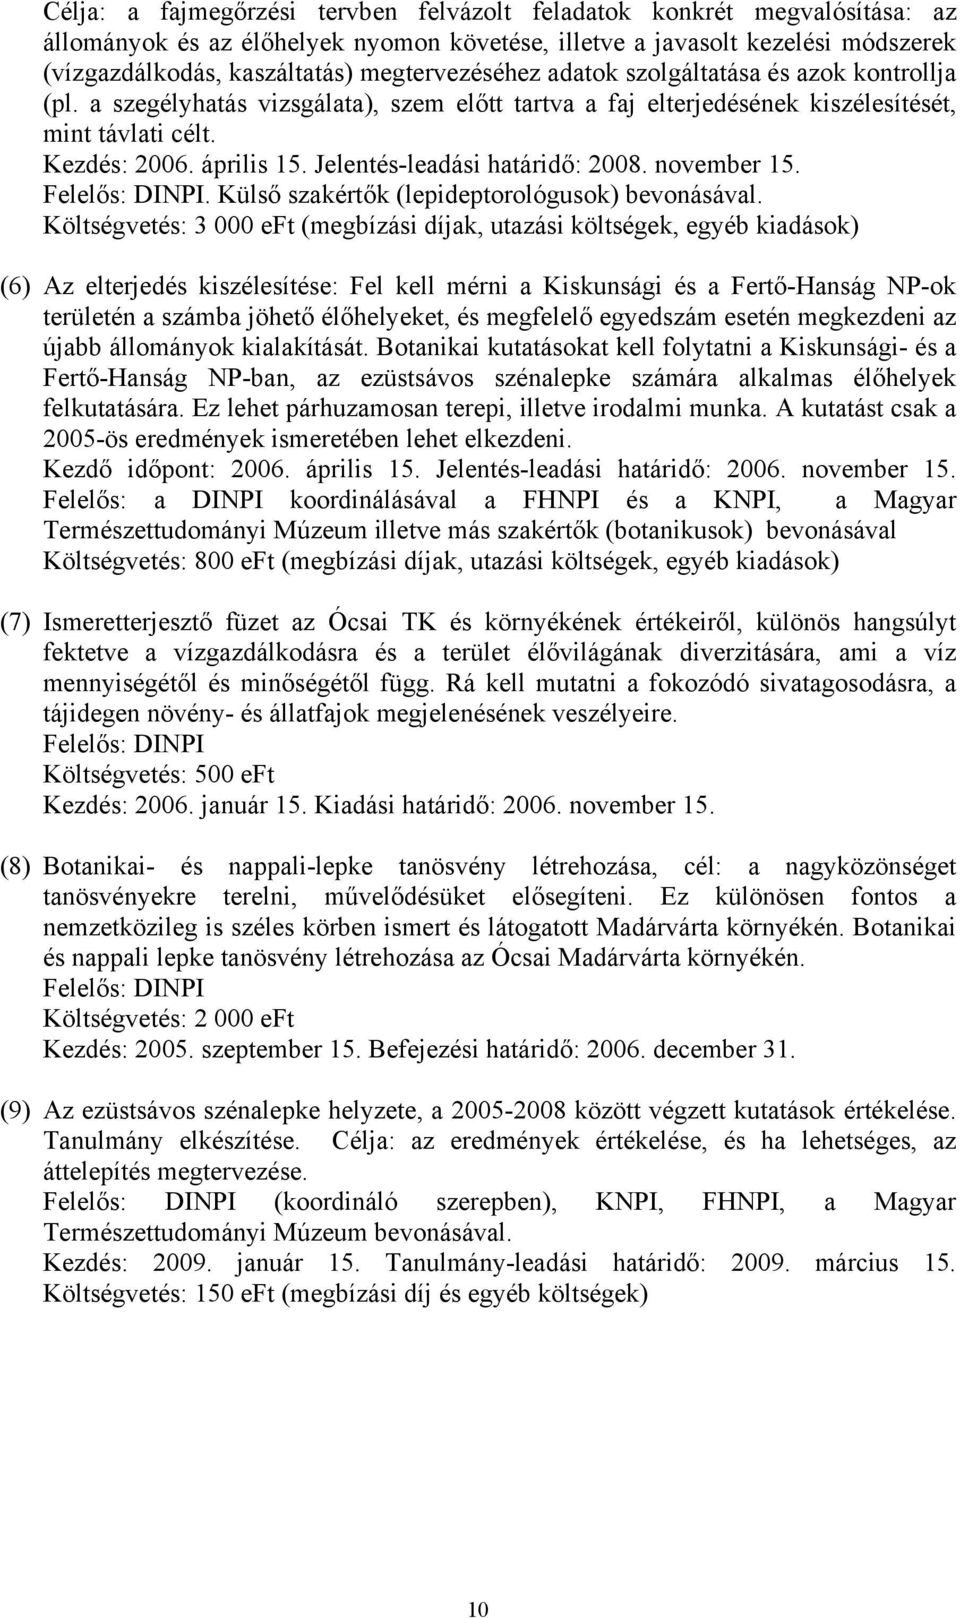 Jelentés-leadási határidő: 2008. november 15. Felelős: DINPI. Külső szakértők (lepideptorológusok) bevonásával.